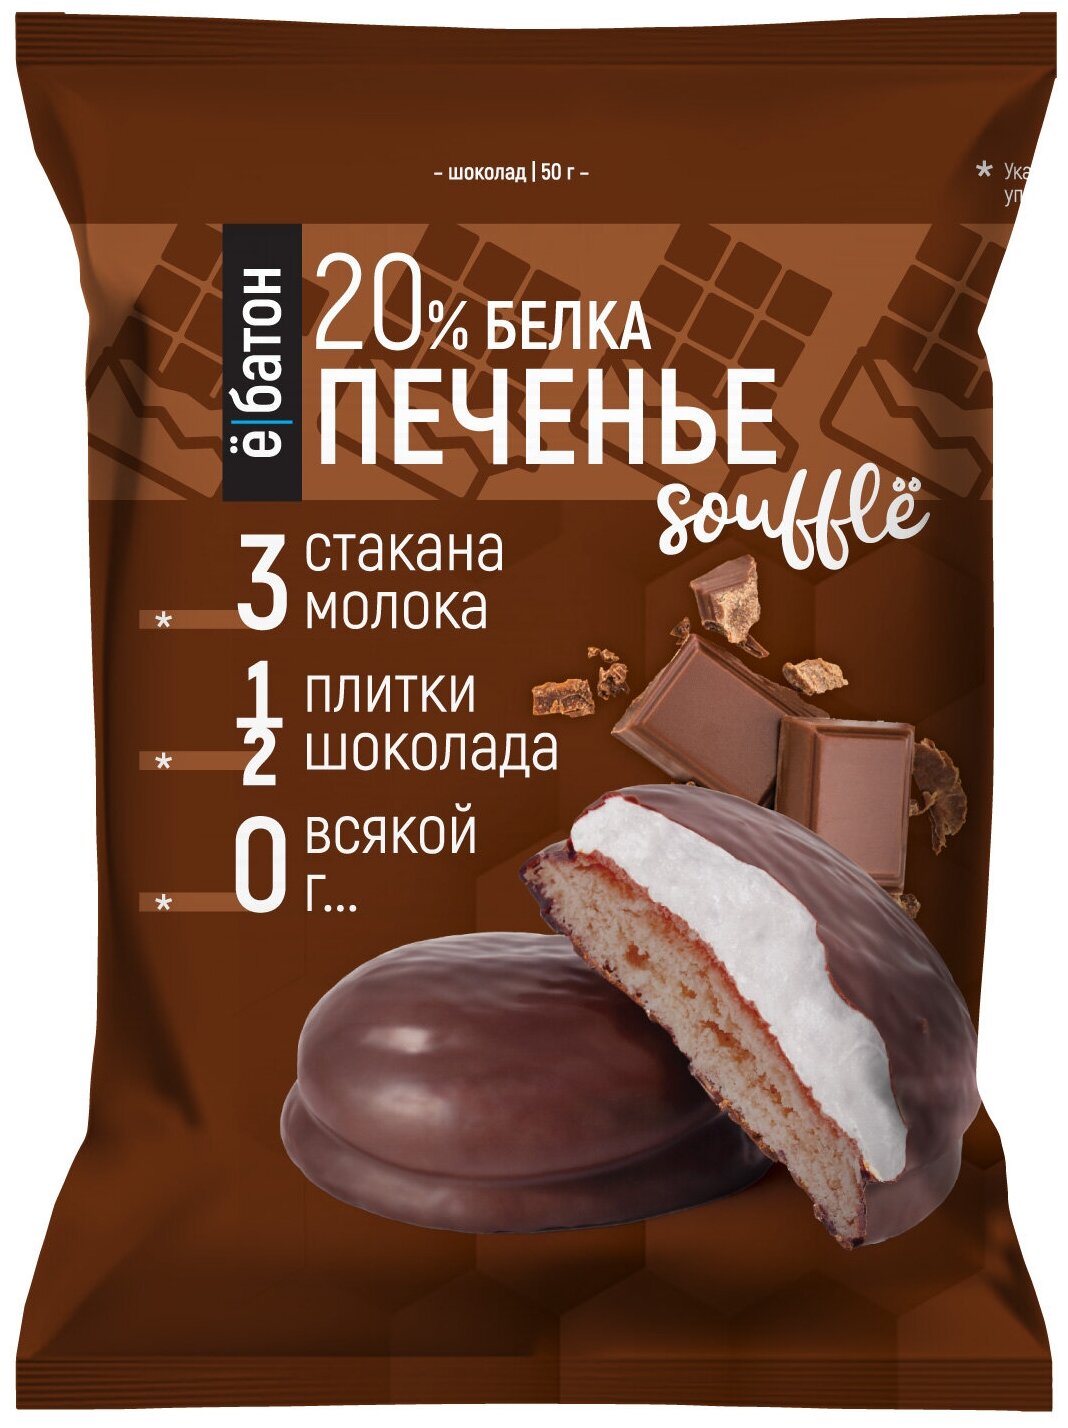 Протеиновое печенье "ё/батон" с белковым суфле 20% белка, со вкусом шоколада, 50гр 9шт — купить по выгодной цене на Яндекс.Маркете